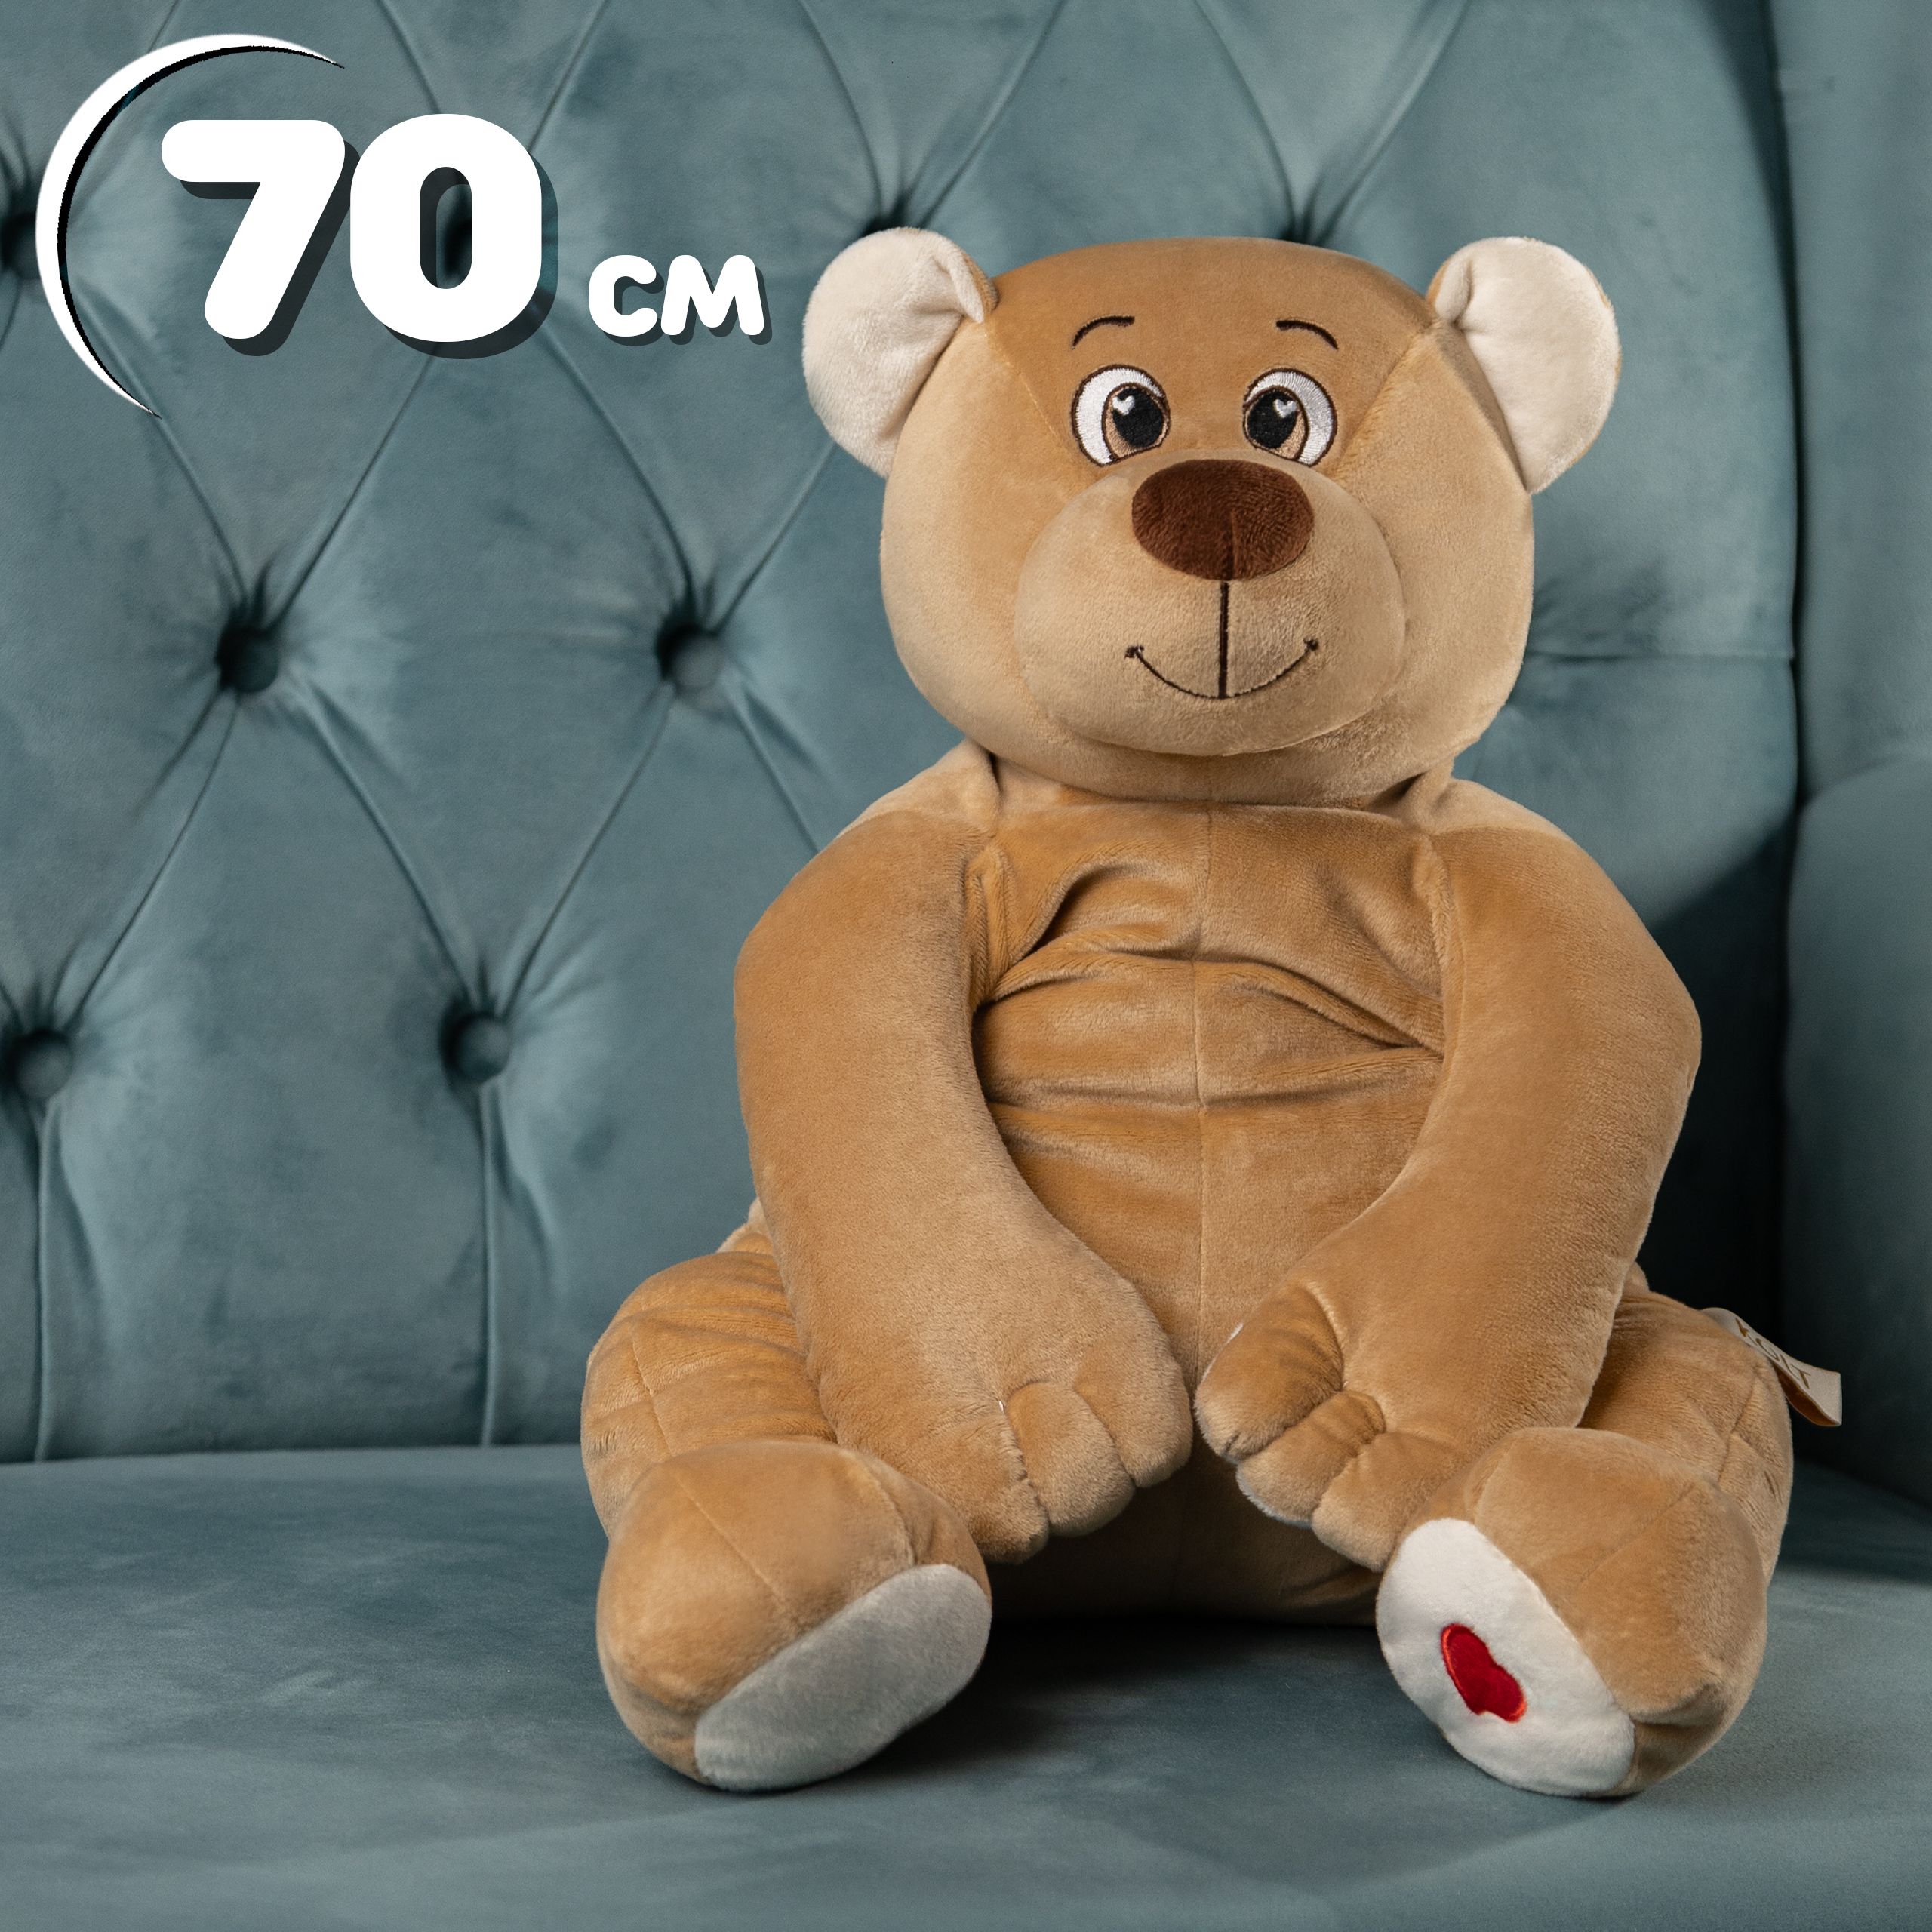 Мягкая игрушка Kult of toys Медведь Лари 70 см кофейный